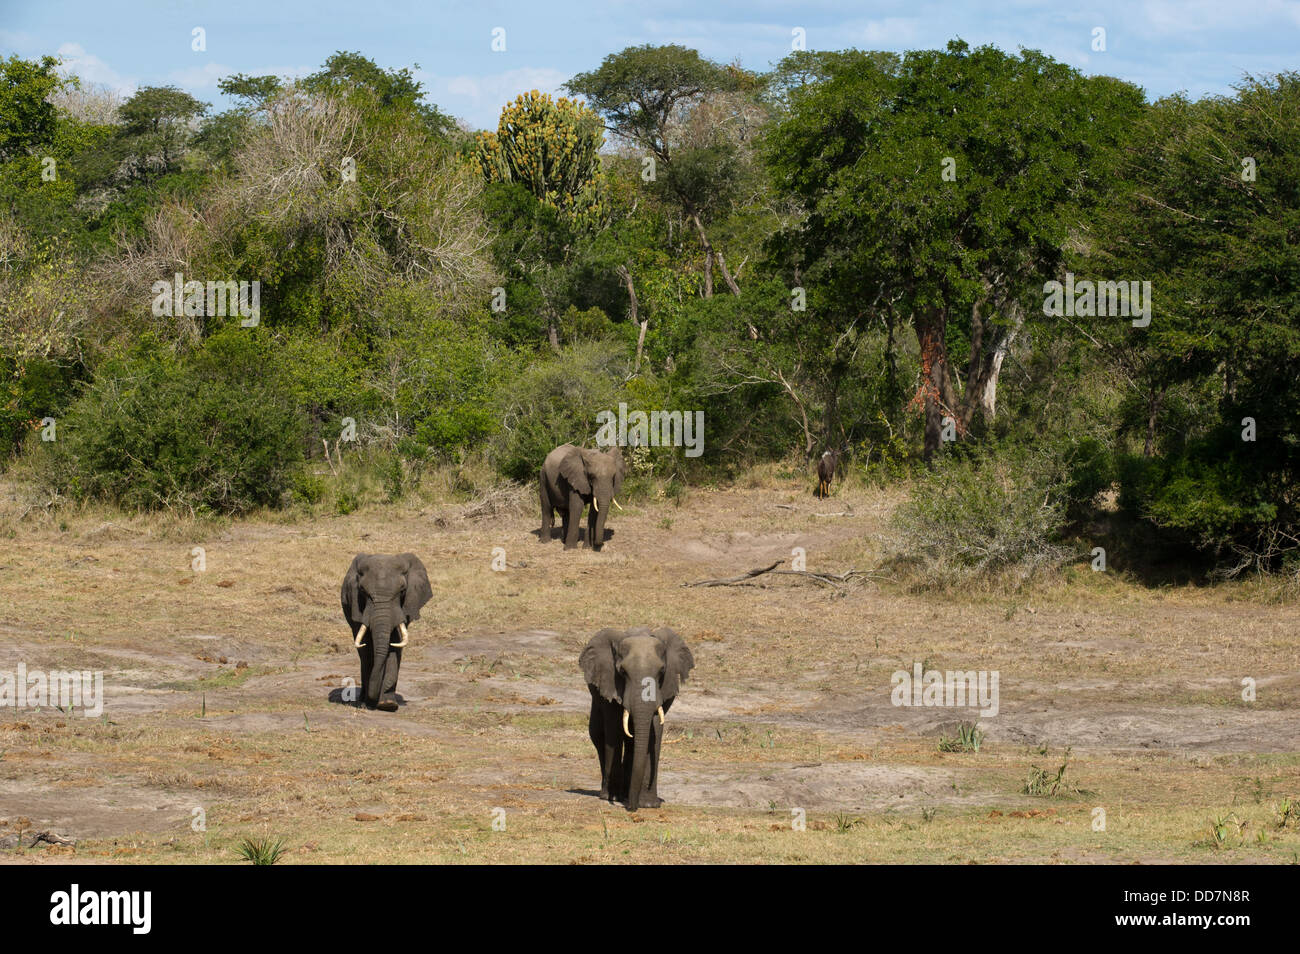 El elefante africano (Loxodonta africana africana), el Parque Tembe Elephant, Sudáfrica Foto de stock